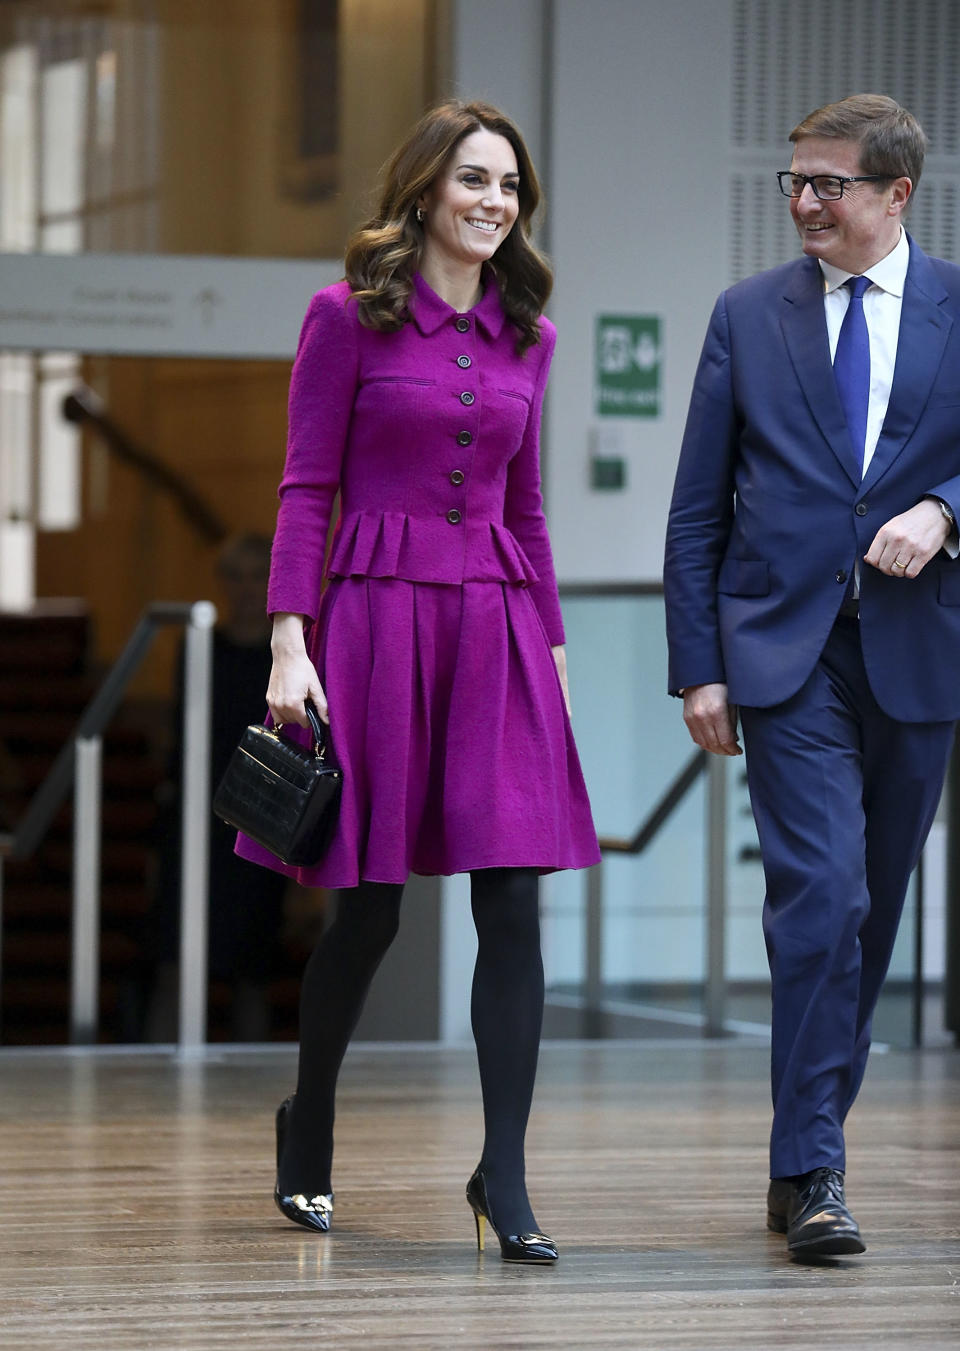 The Duchess of Cambridge wore a $16,000 Oscar de la Renta skirt suit. Photo: Getty Images